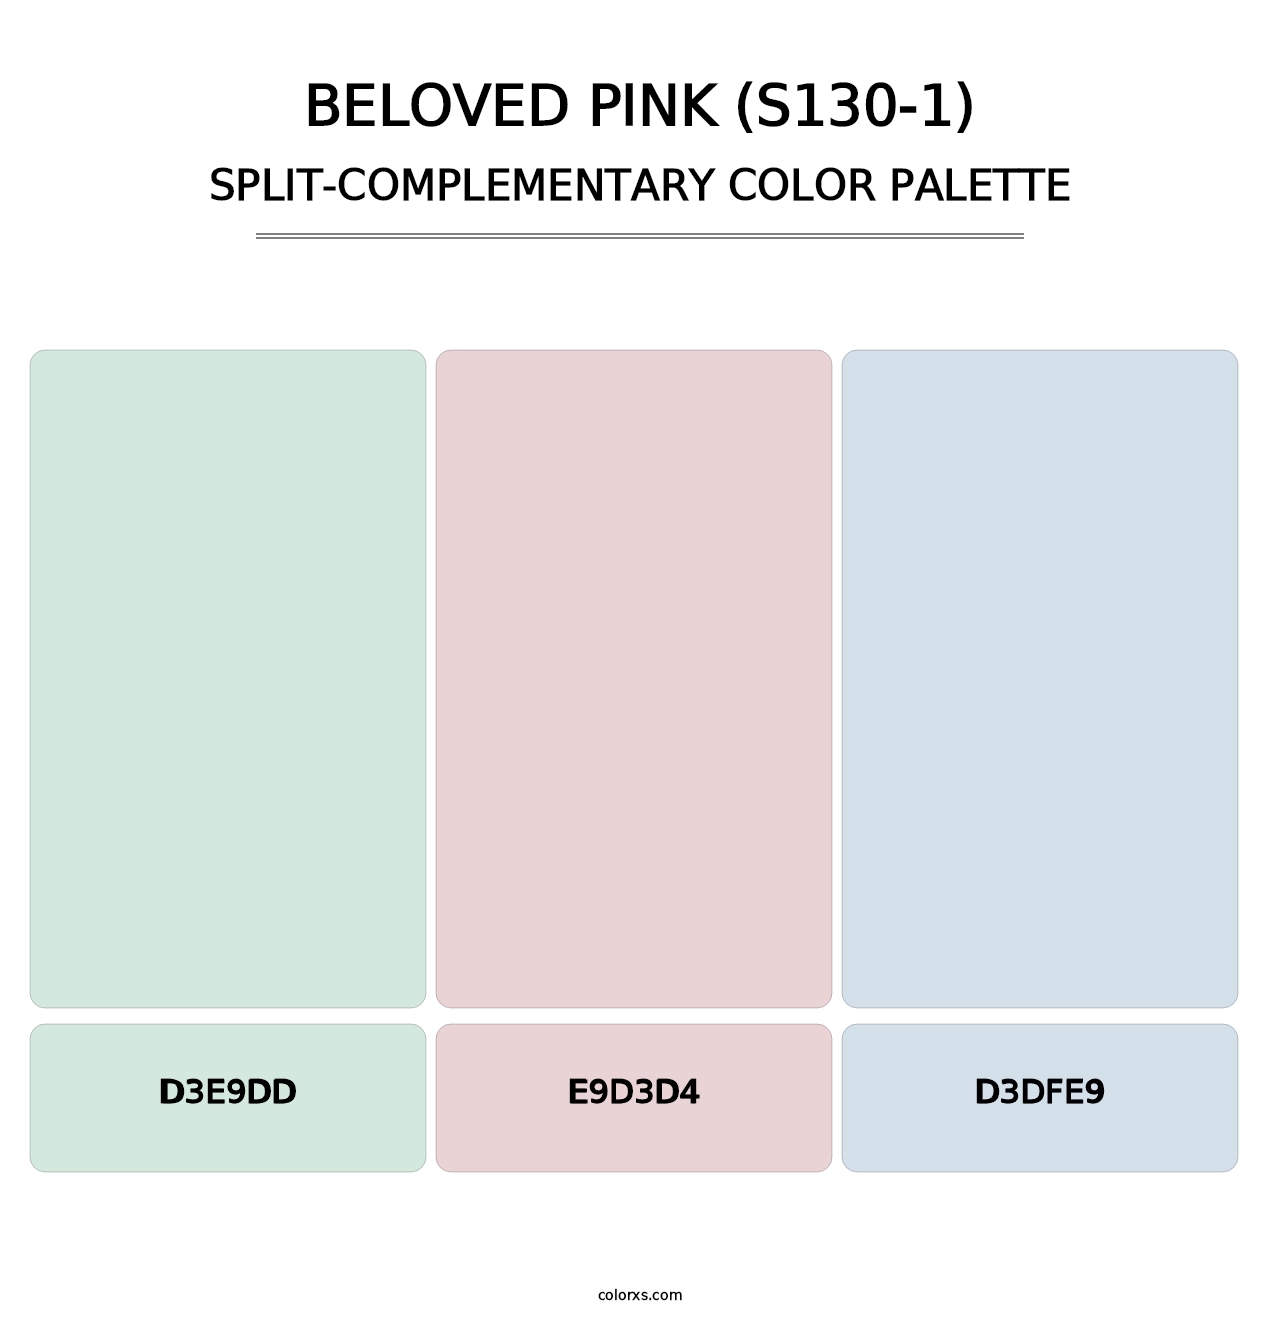 Beloved Pink (S130-1) - Split-Complementary Color Palette